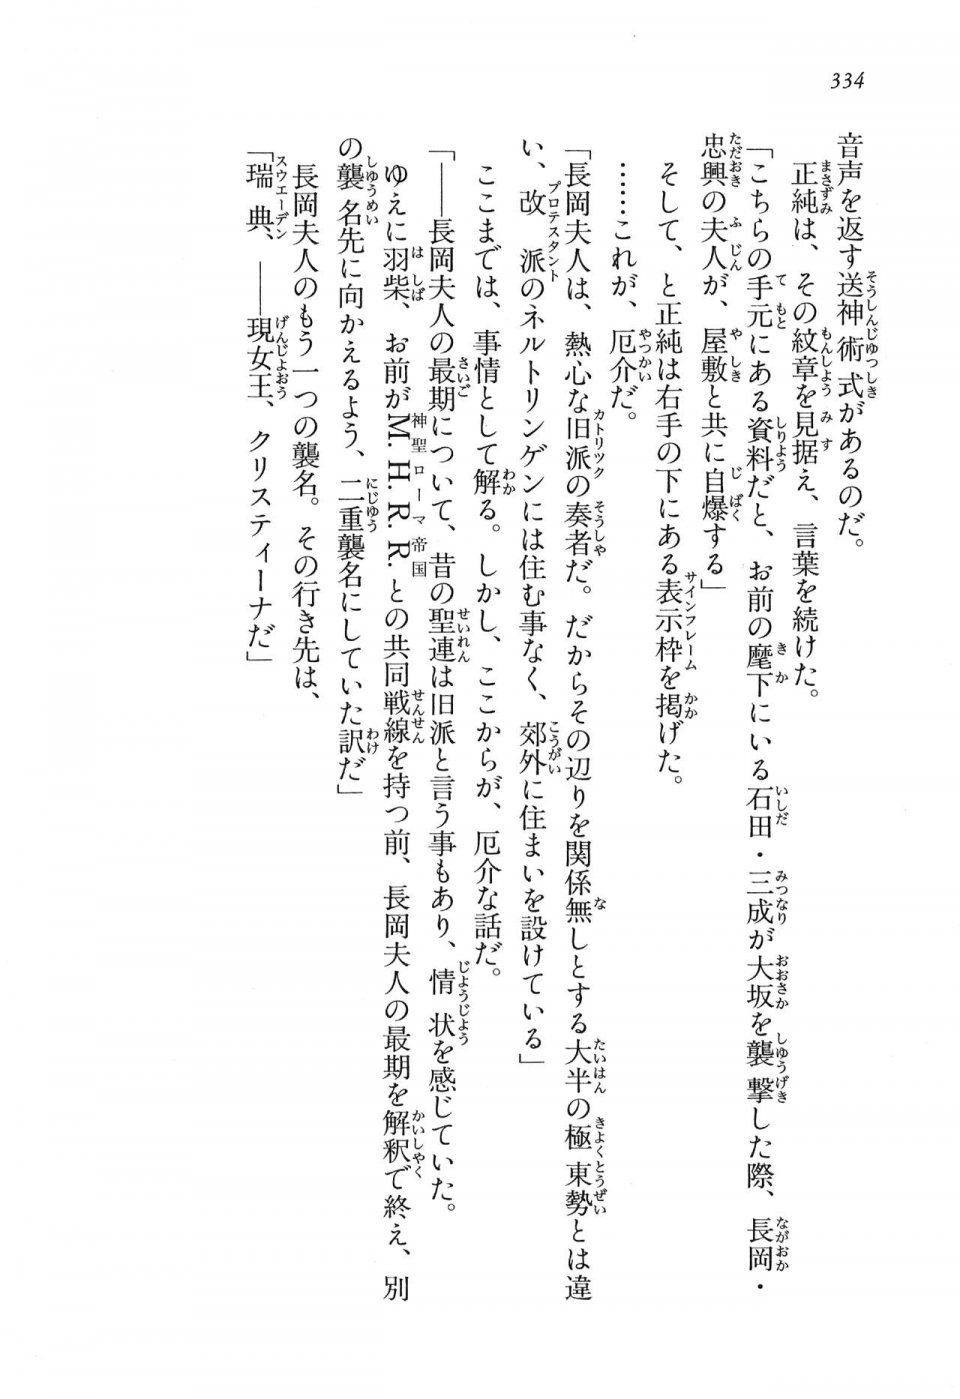 Kyoukai Senjou no Horizon LN Vol 16(7A) - Photo #334